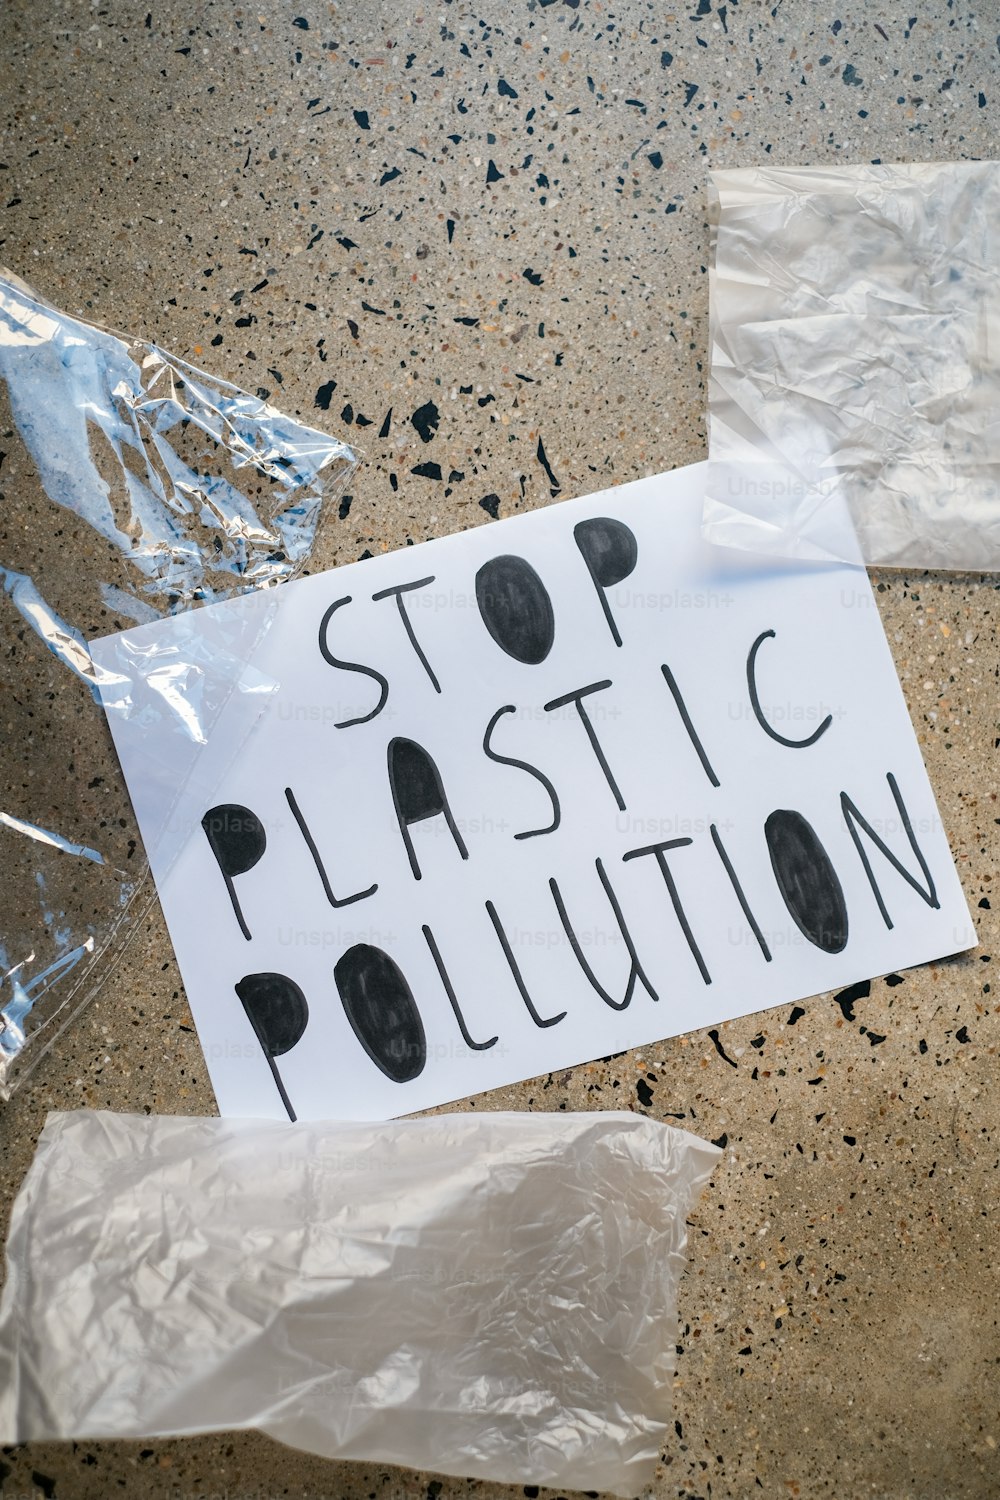 Ein Schild mit der Aufschrift "Stoppt die Plastikverschmutzung auf dem Boden"